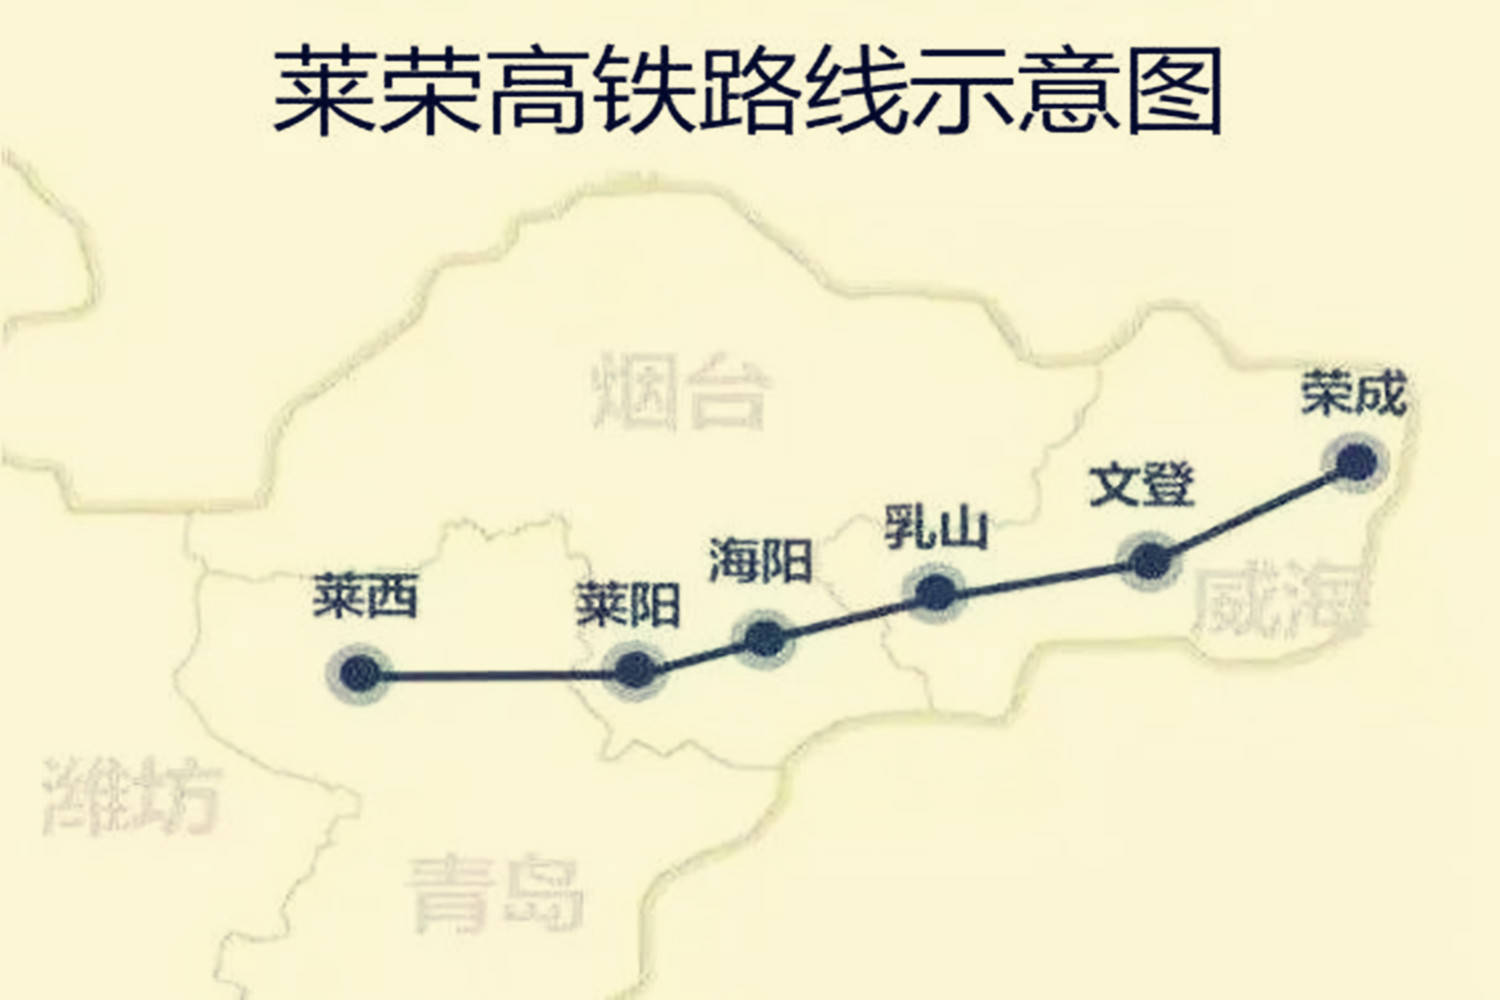 山东省内一条长约193公里的高铁线在建中,总投资约297